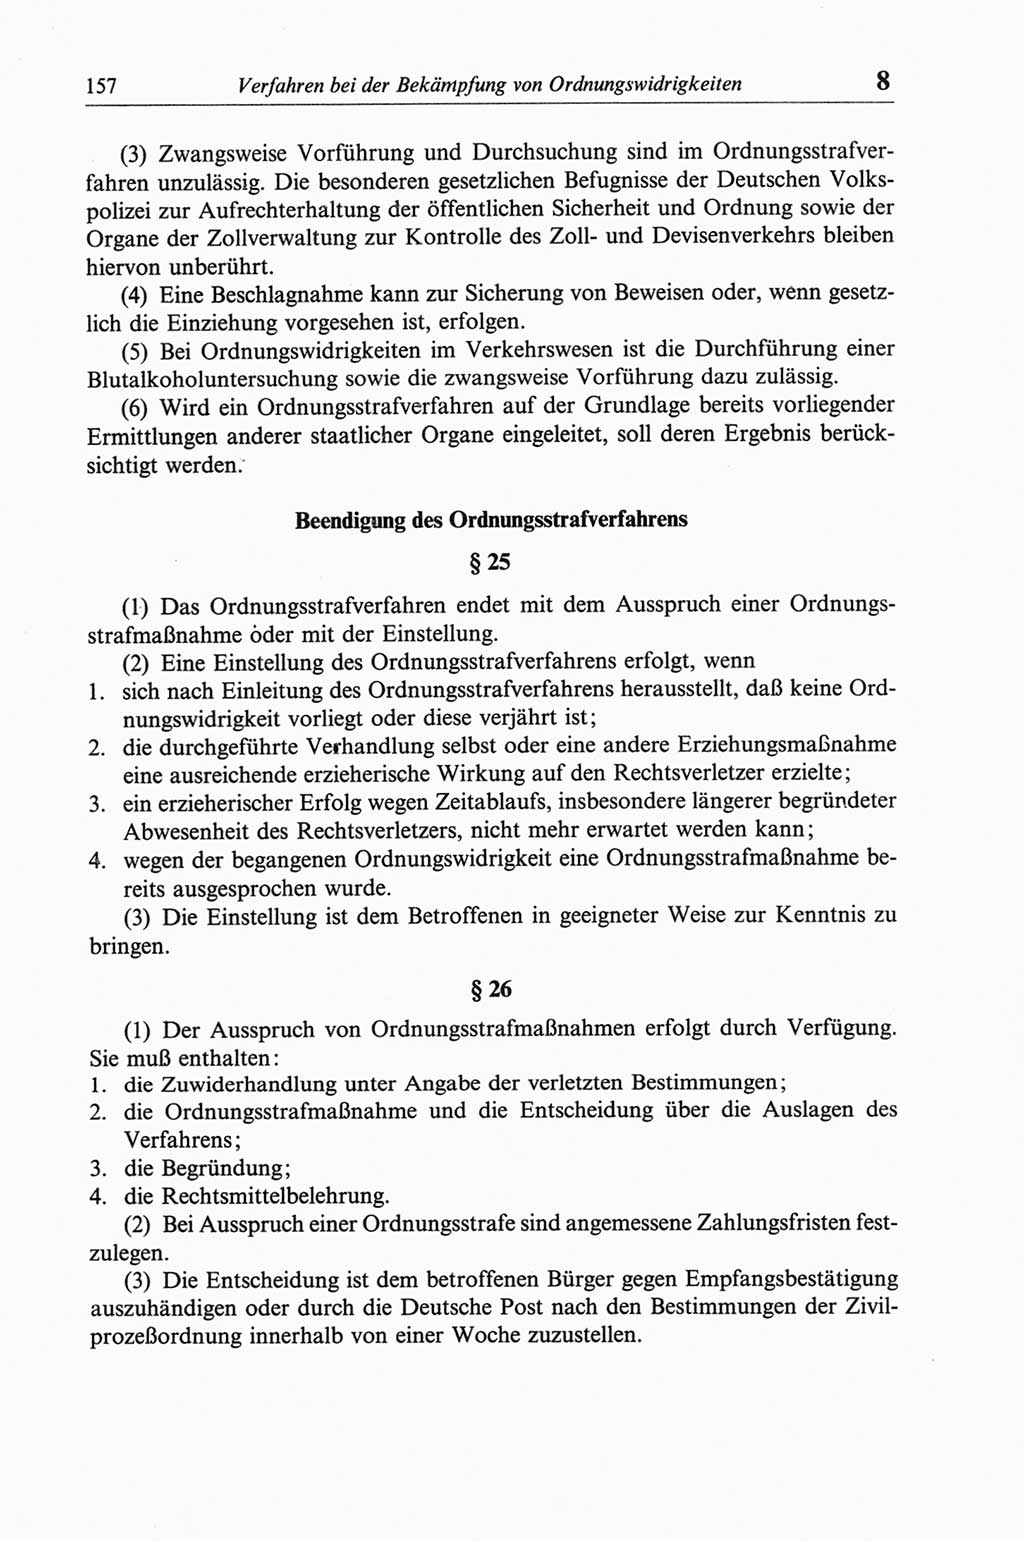 Strafgesetzbuch (StGB) der Deutschen Demokratischen Republik (DDR) und angrenzende Gesetze und Bestimmungen 1968, Seite 157 (StGB Ges. Best. DDR 1968, S. 157)